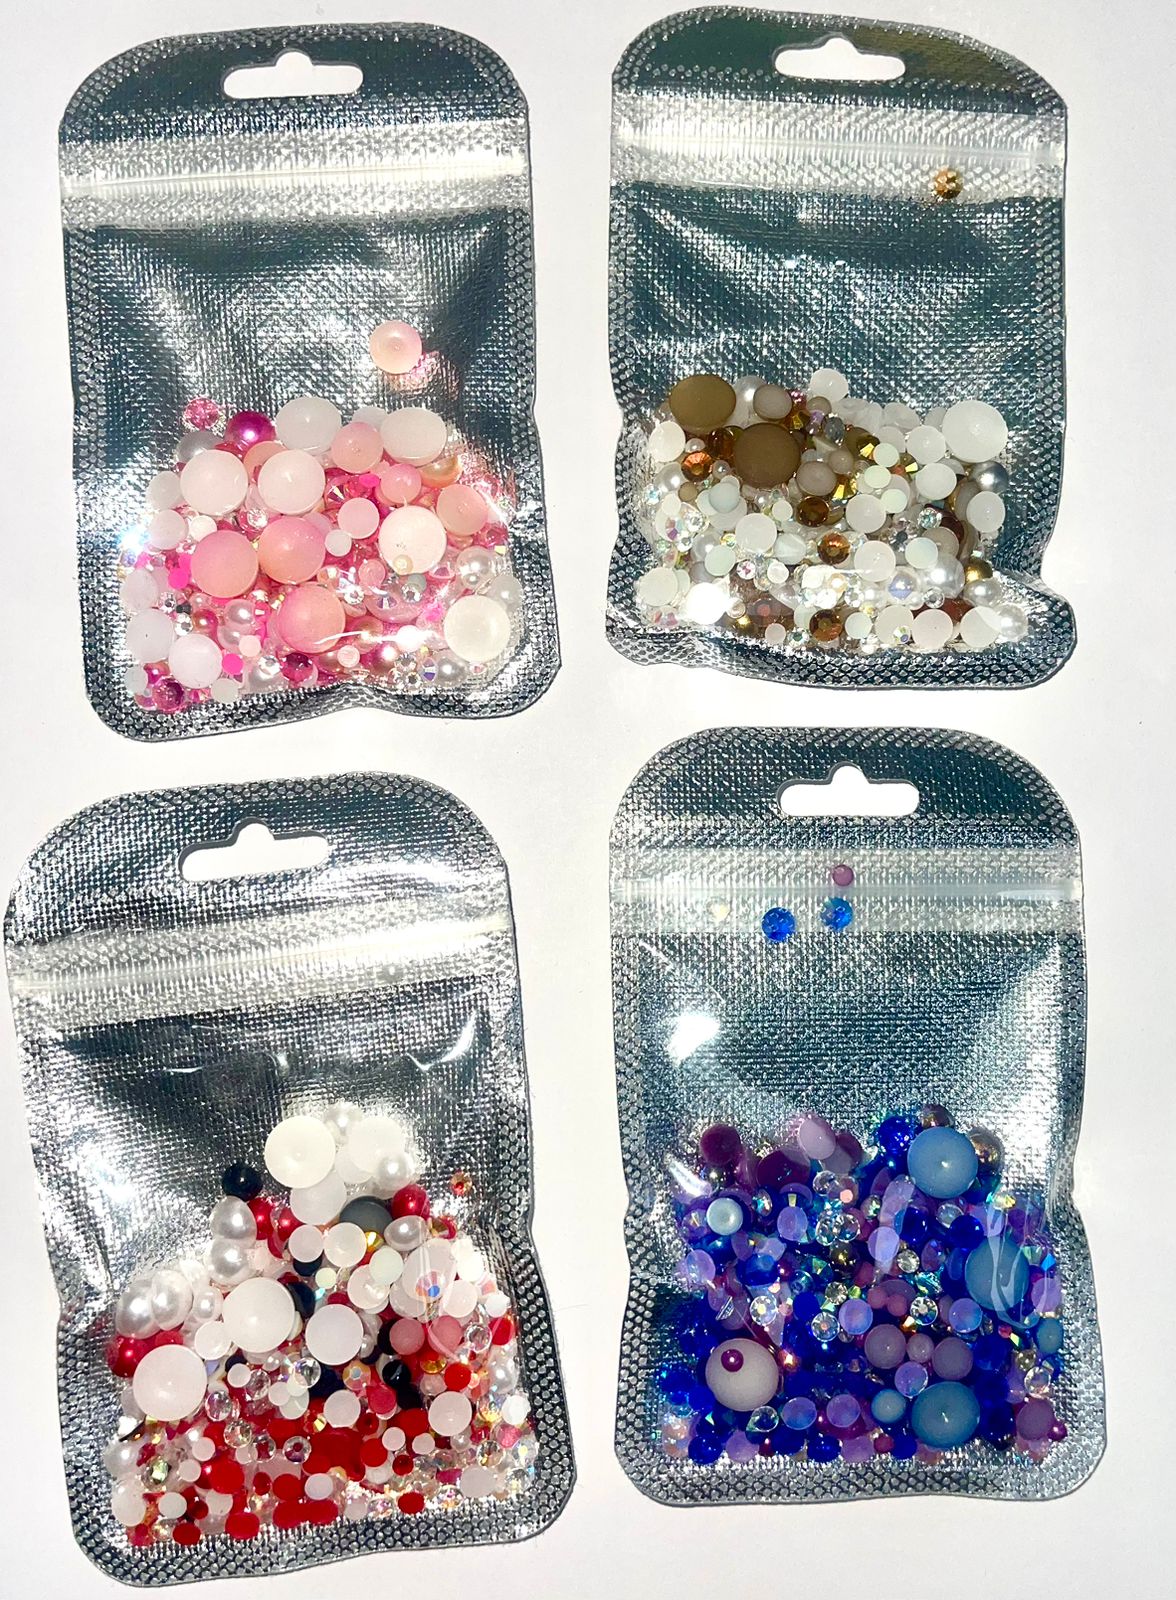 Piedras para Personalizar Tazas y Cristales / Flatback Rhinestones